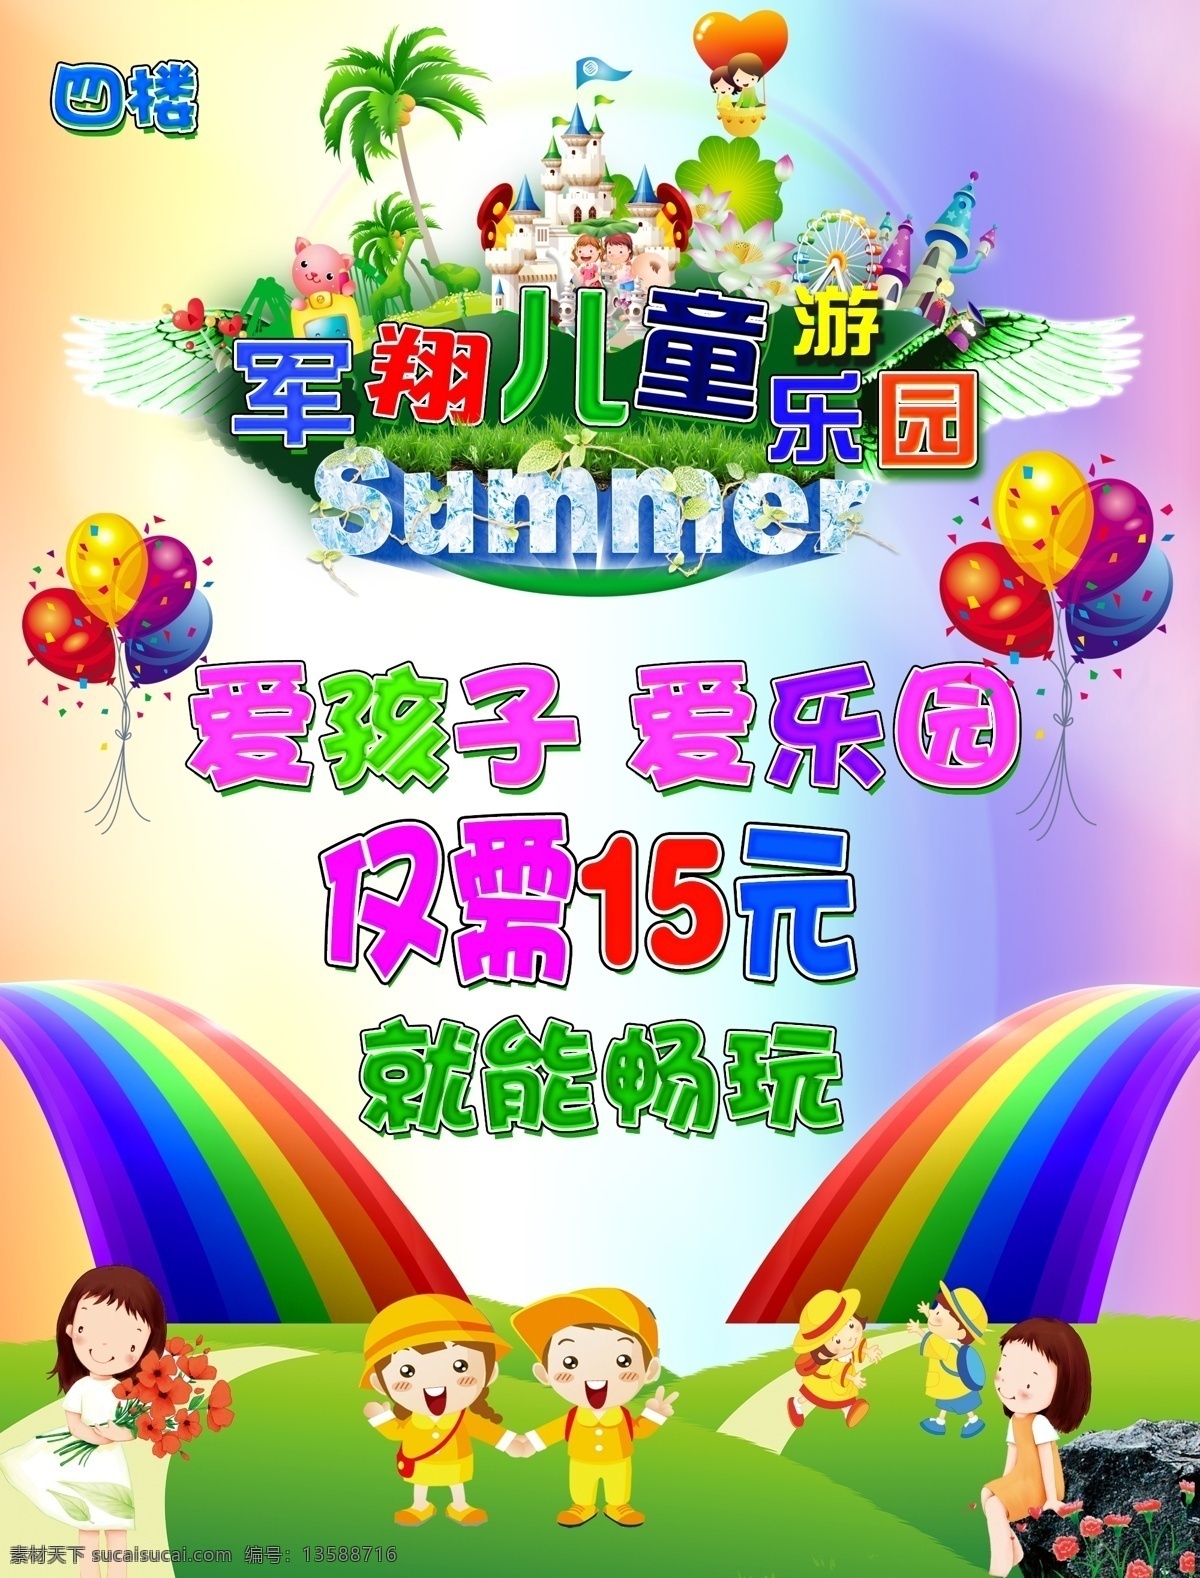 爱孩子爱乐园 彩虹 儿童乐园巨幅 气球 城堡 广告设计模板 源文件